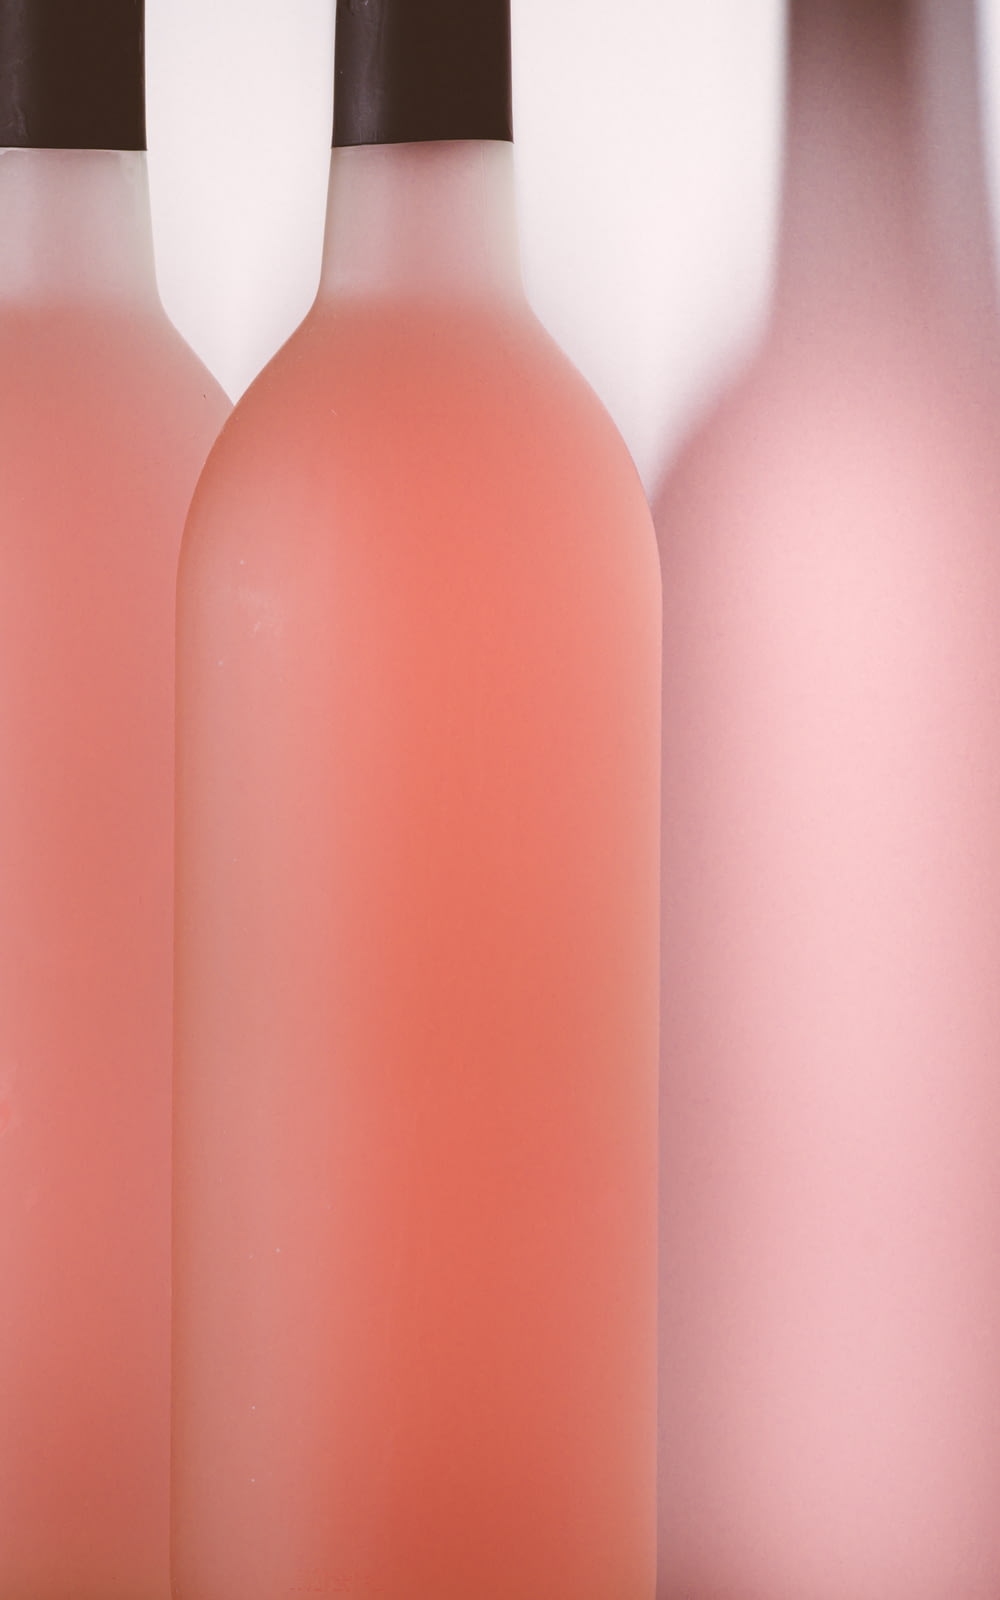 rosa und weiße Plastikflaschen